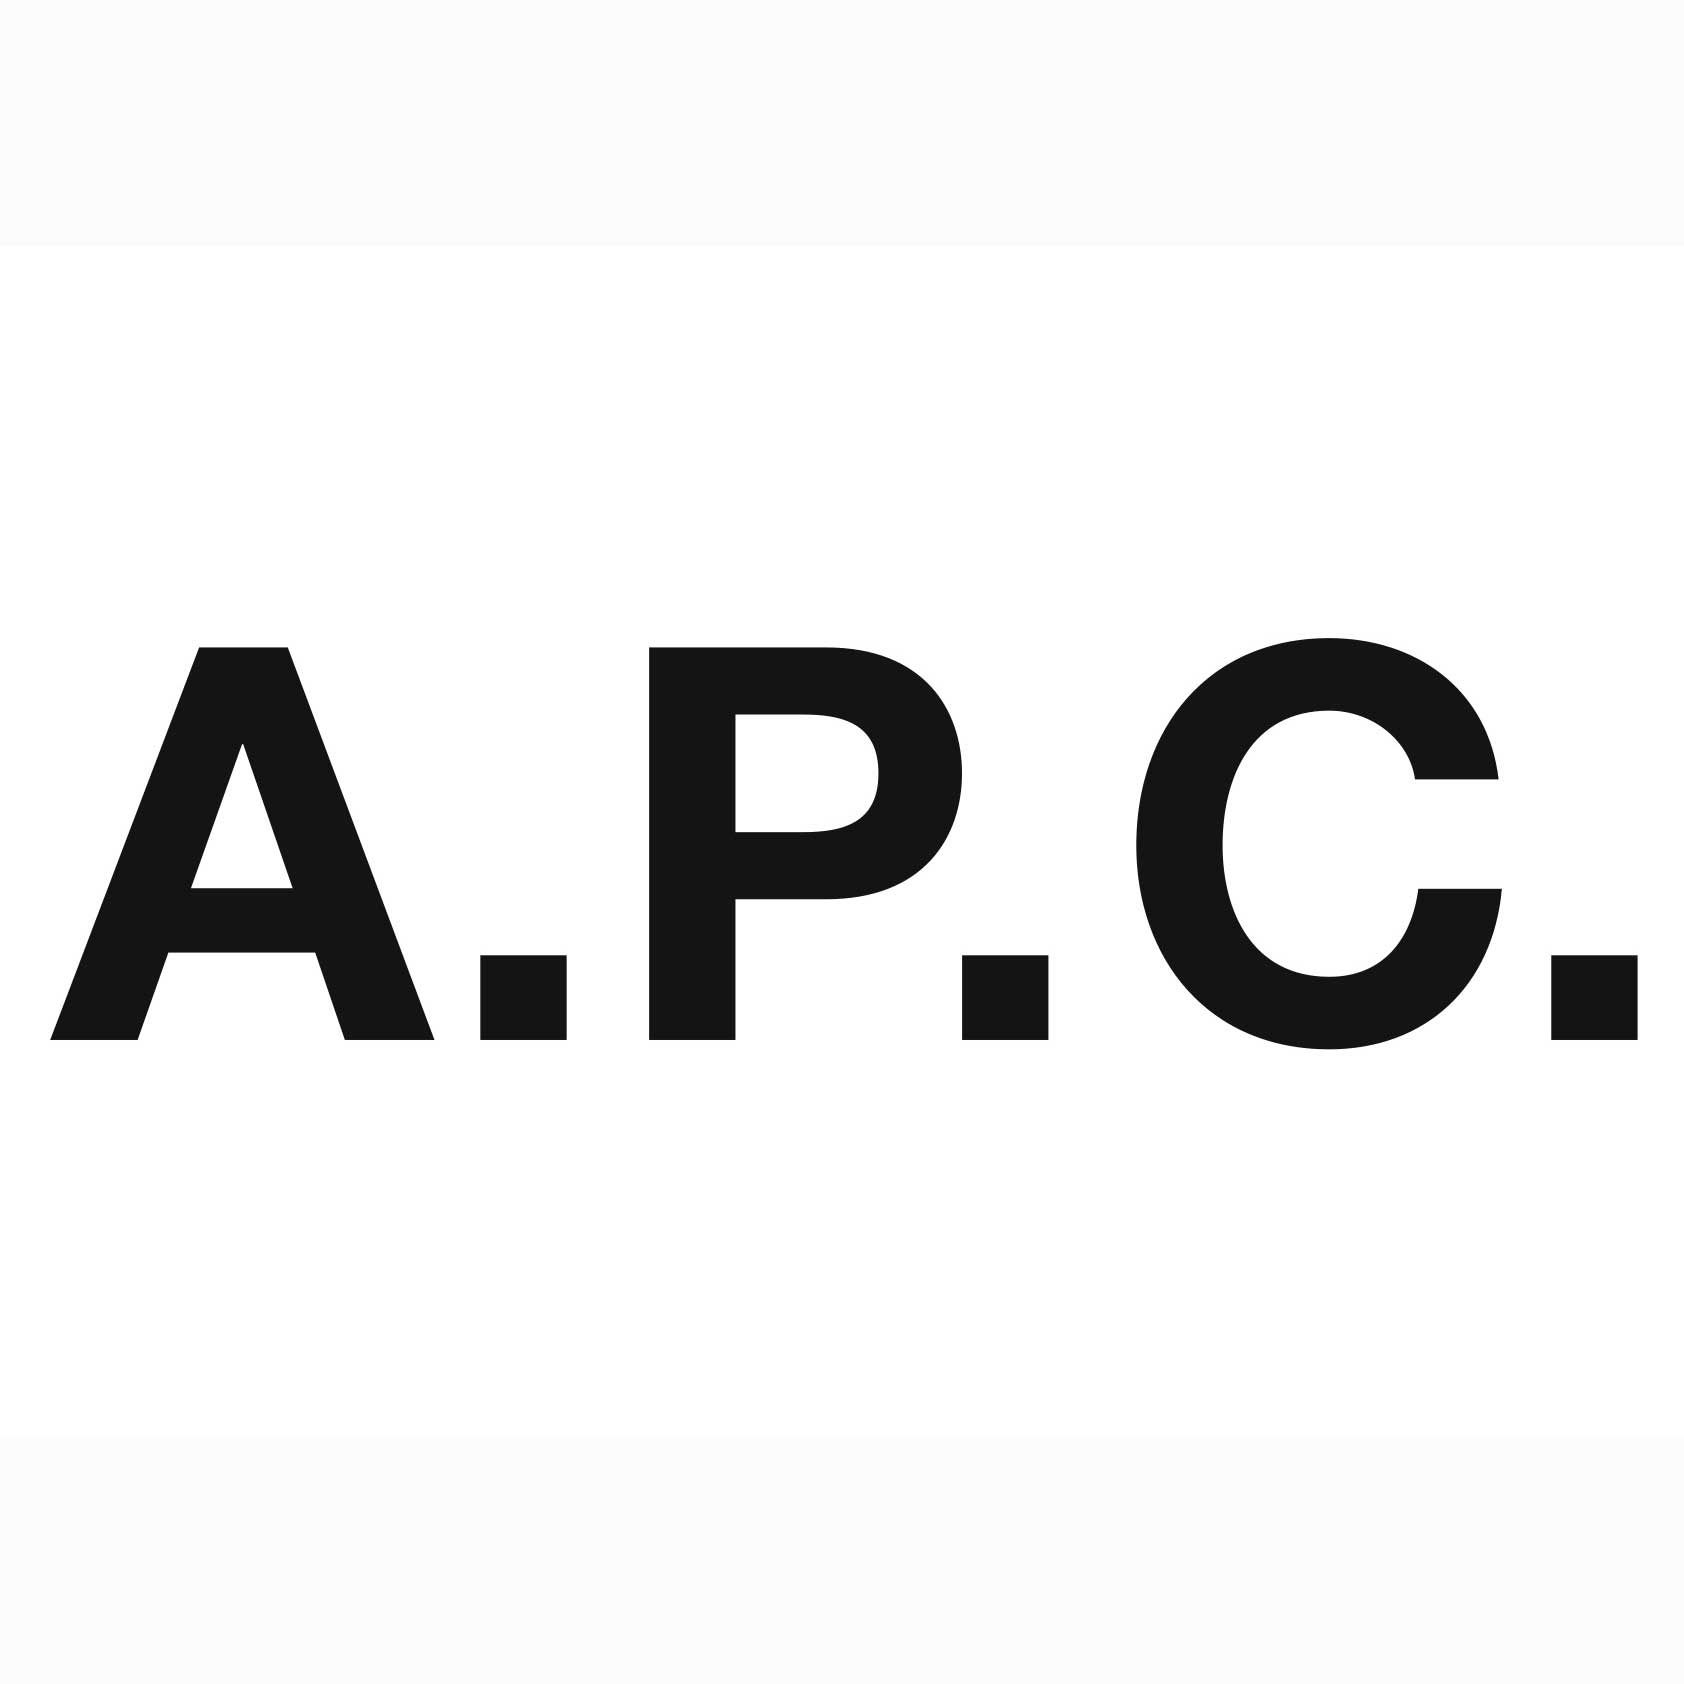 A.P.c. Logo - apc-logo | WarehouseSales.com